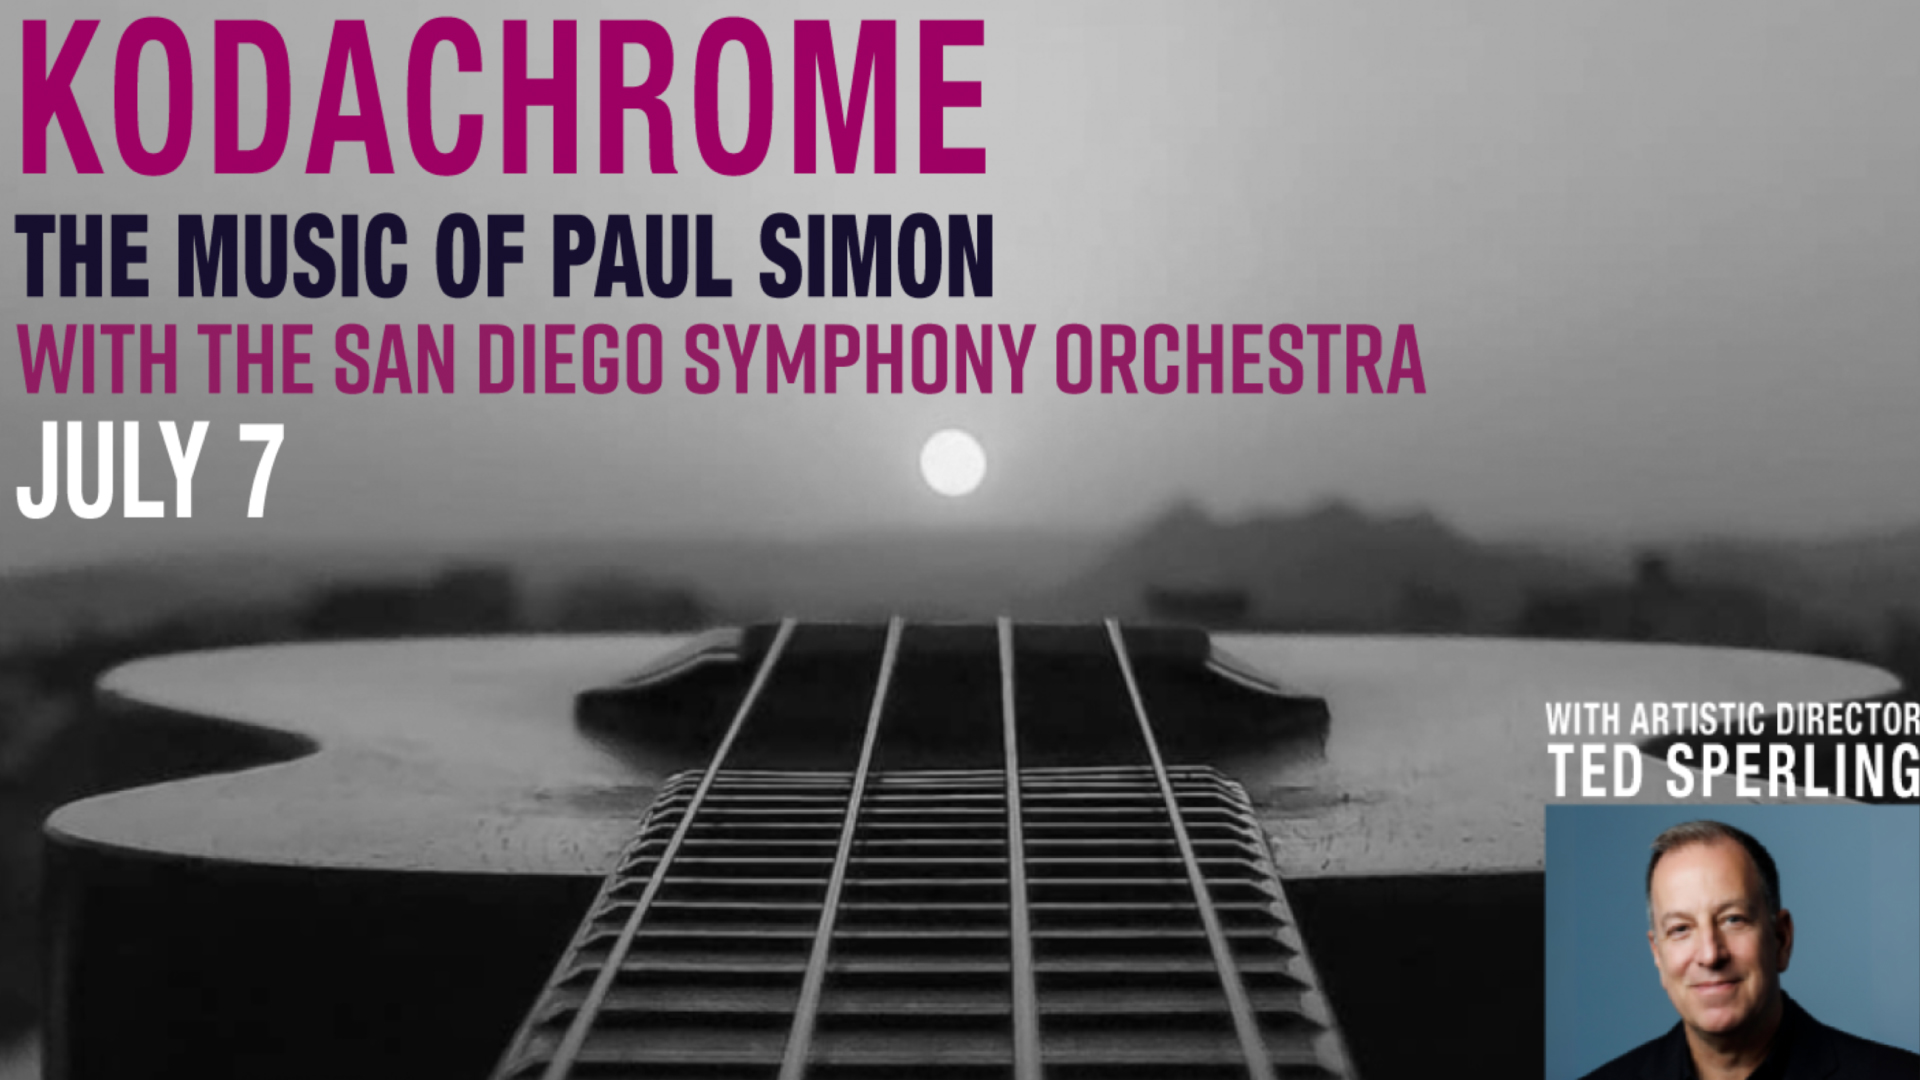 Kodachrome: The Music of Paul Simon